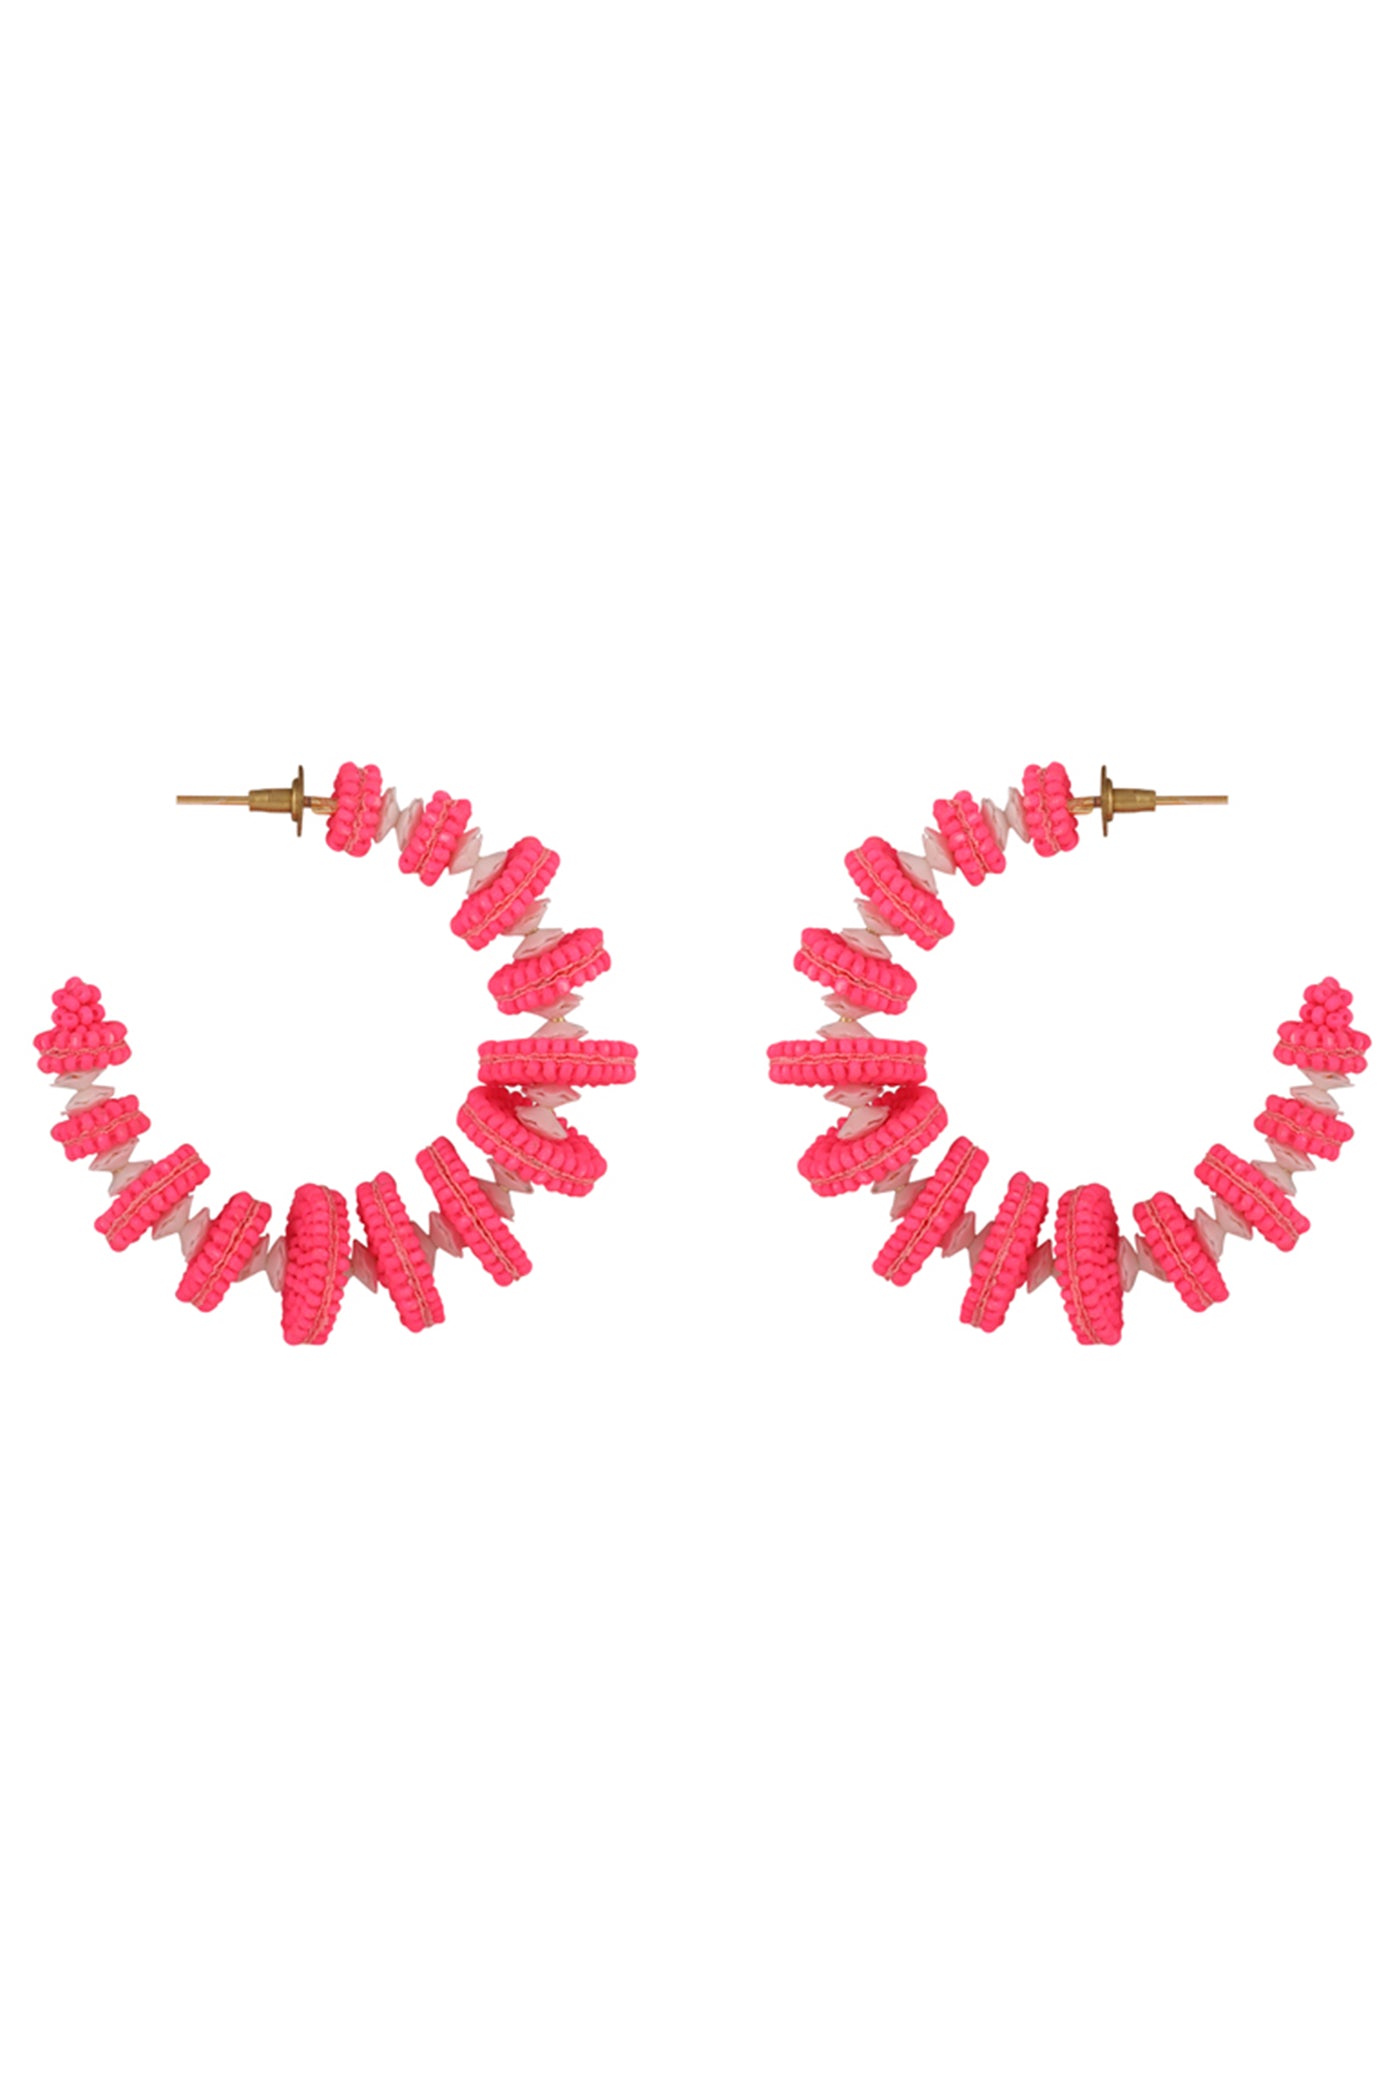 Neon Pink "Deconstruct" Hoop Earrings